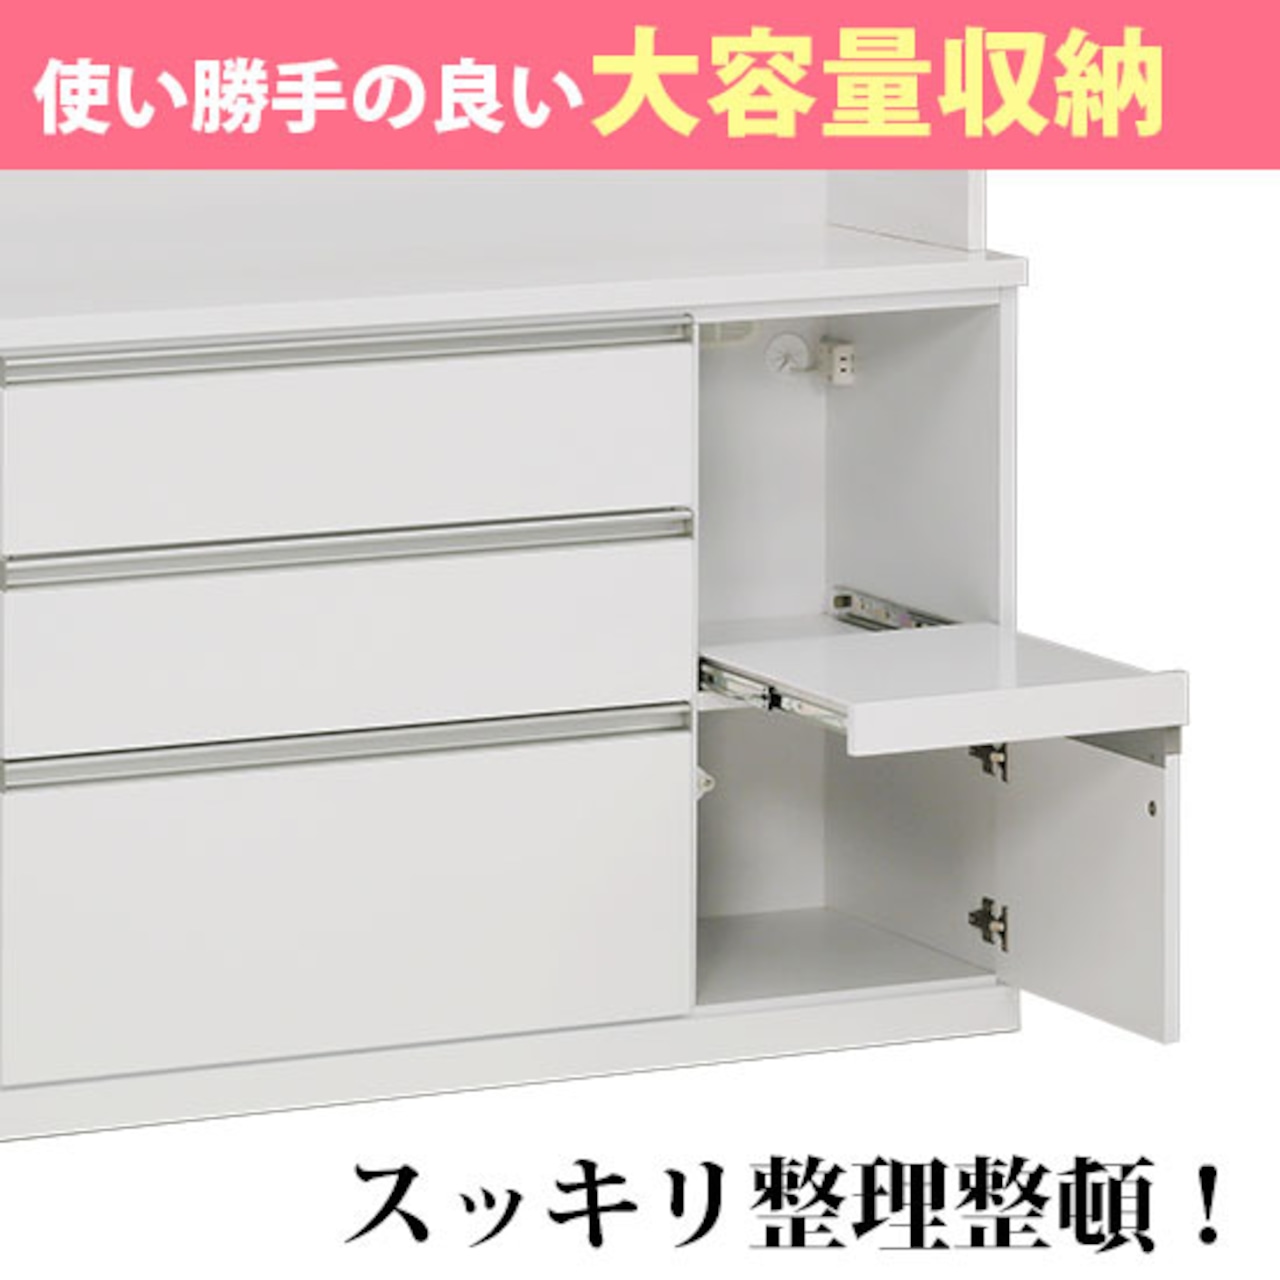 【幅120】キッチンボード 食器棚  レンジ台 収納 炊飯器収納